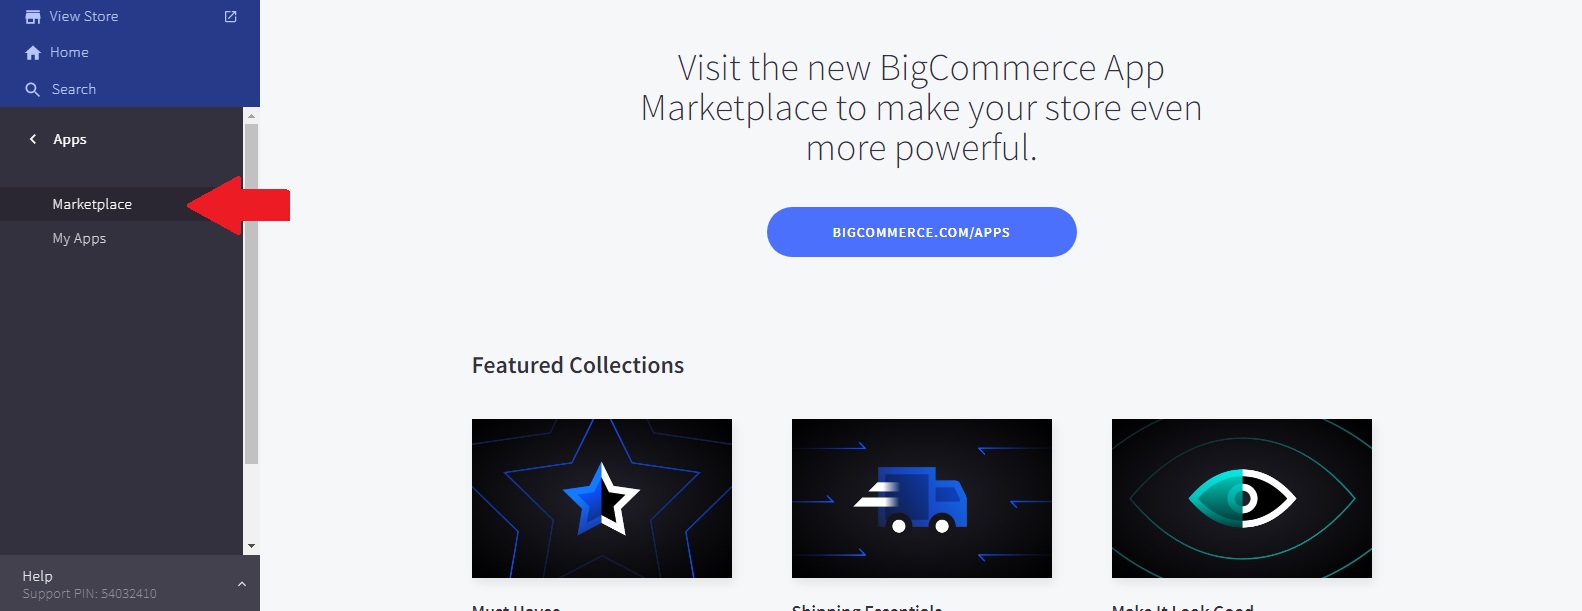 BigCommerce App Marketplace